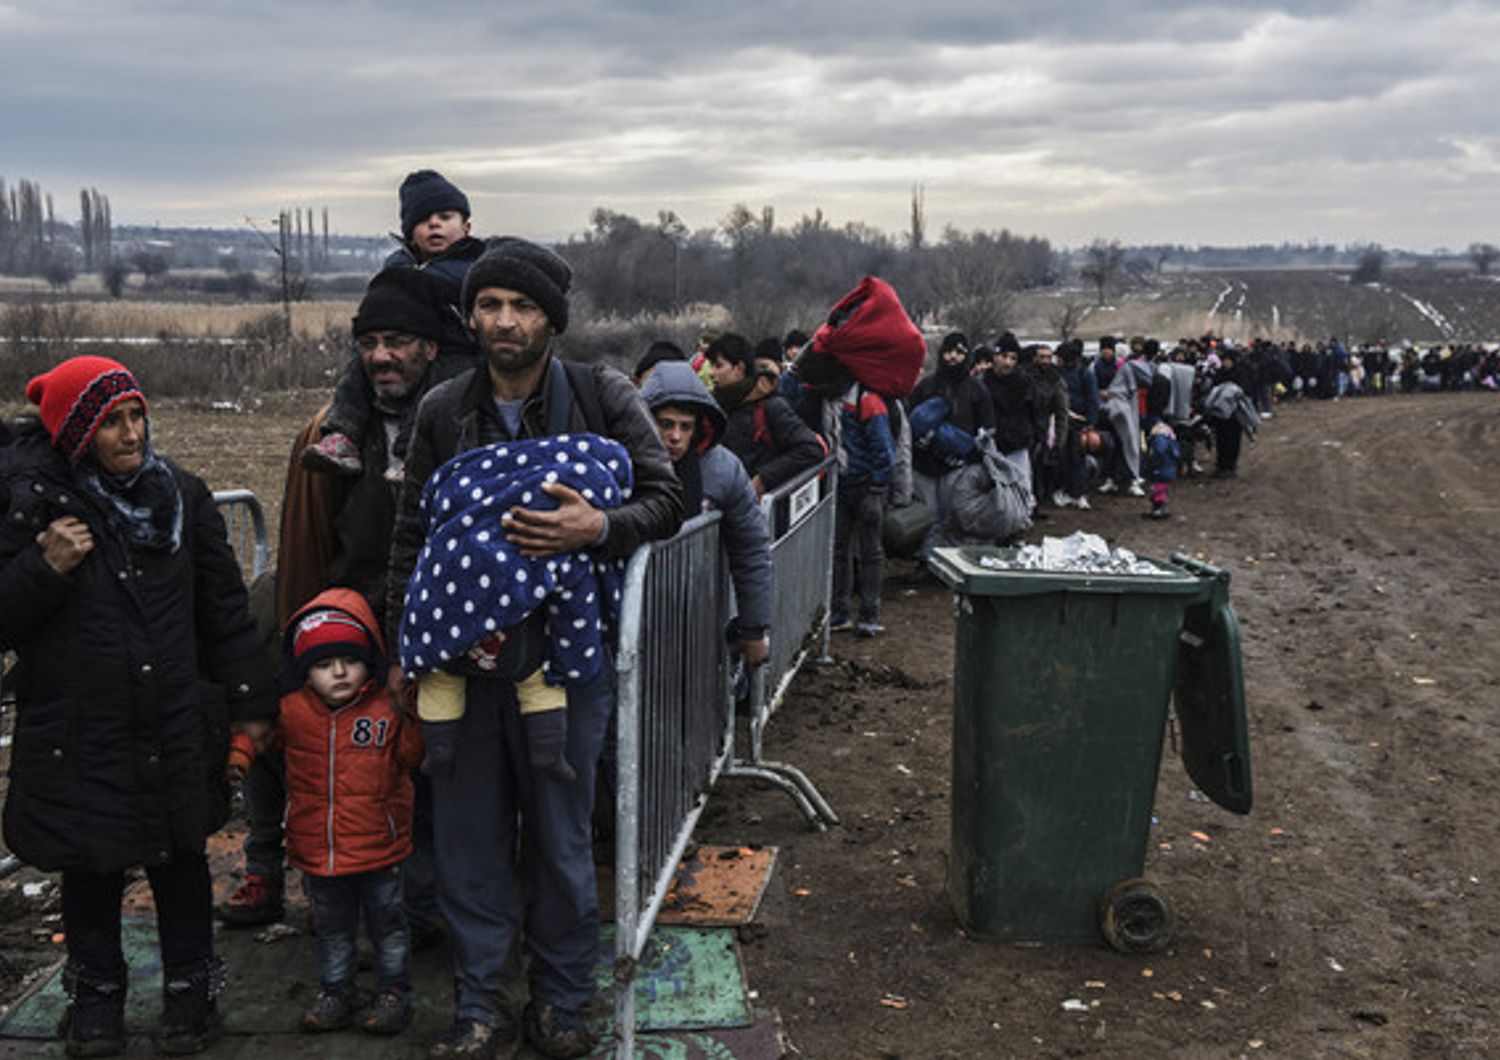 Migranti e rifugiati al controllo di sicurezza dopo aver attraversato il confine con la Macedonia in Serbia, vicino al villaggio di Miratovac. Più di 1 milione di persone provenienti da paesi come la Siria, l'Iraq o Afghanistan sono entrati in Europa l'anno scorso in quella che è stata definita la più grande migrazione verso il continente dalla seconda guerra mondiale (26 gennaio 2016) (foto Afp)